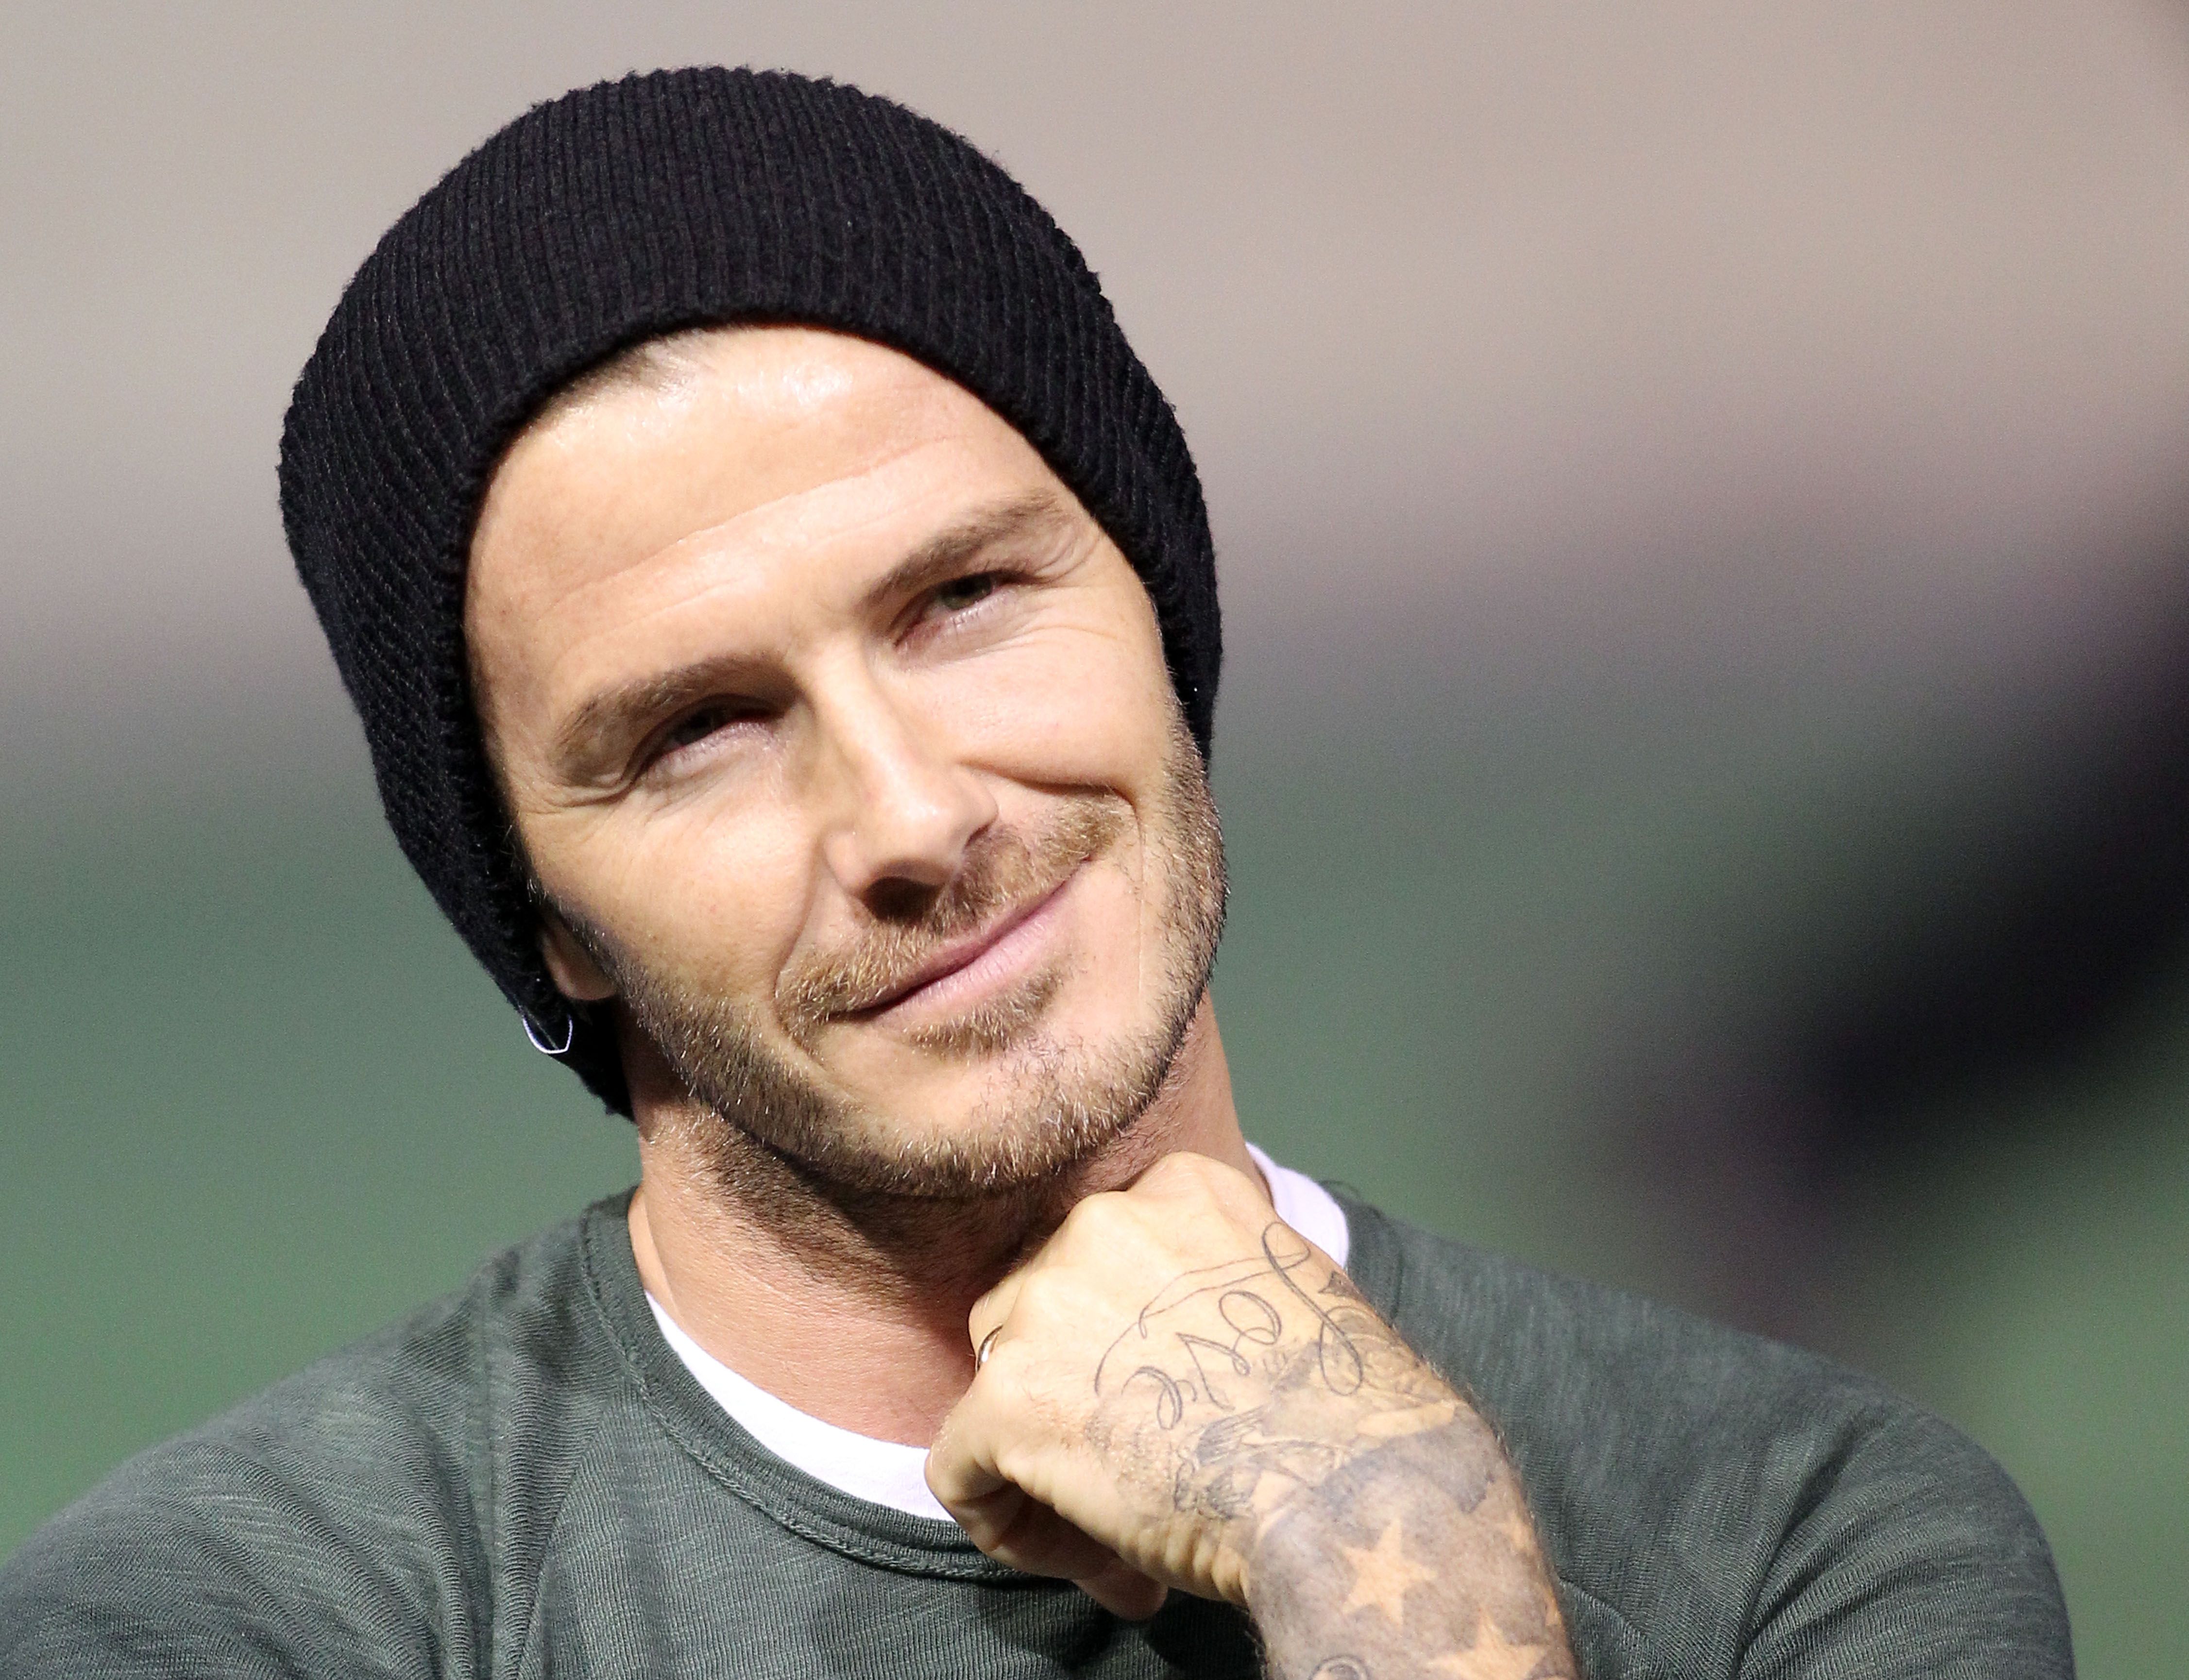 Κορίτσια, ο Beckham! (10 λόγοι να χαιρόμαστε που επιστρέφει στην Ευρώπη)